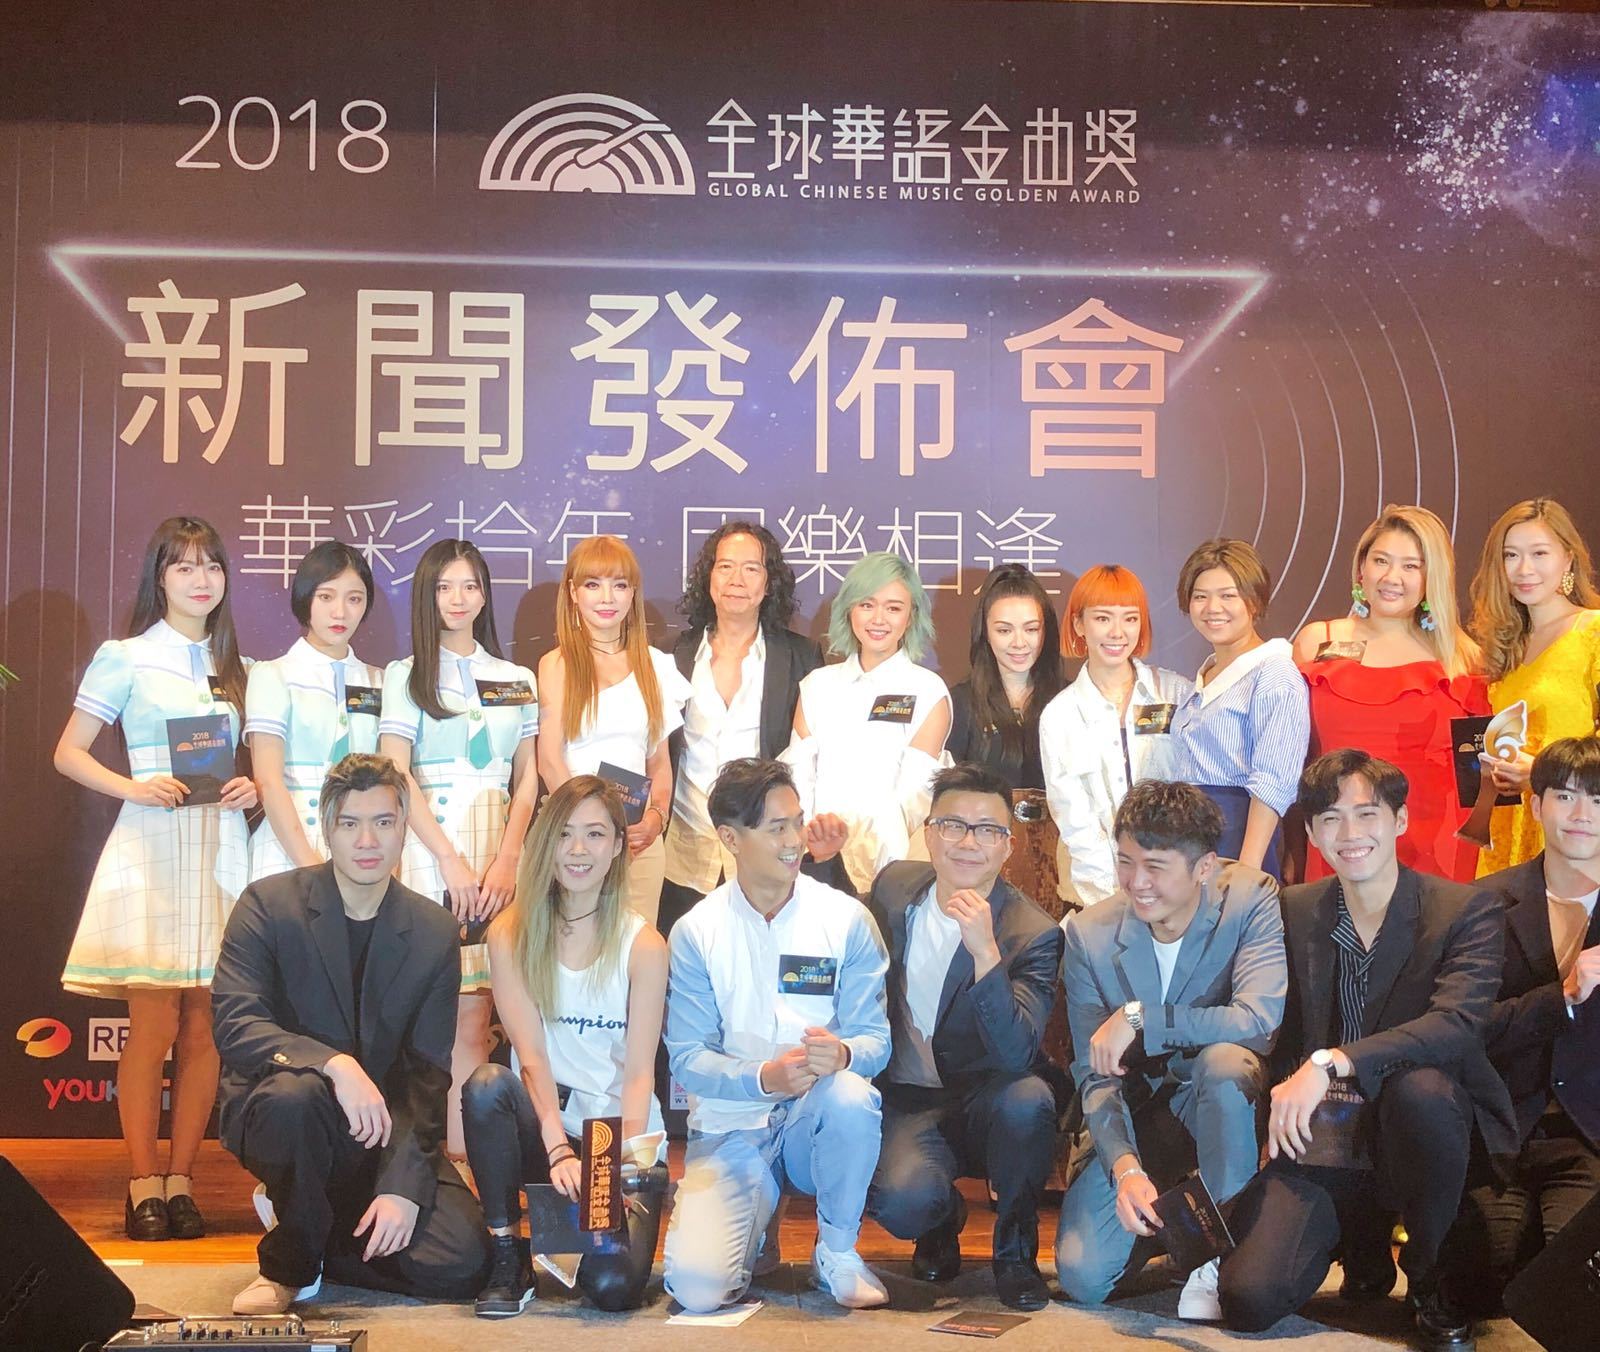 张羽希出席2018全球华语金曲奖颁奖典礼新闻